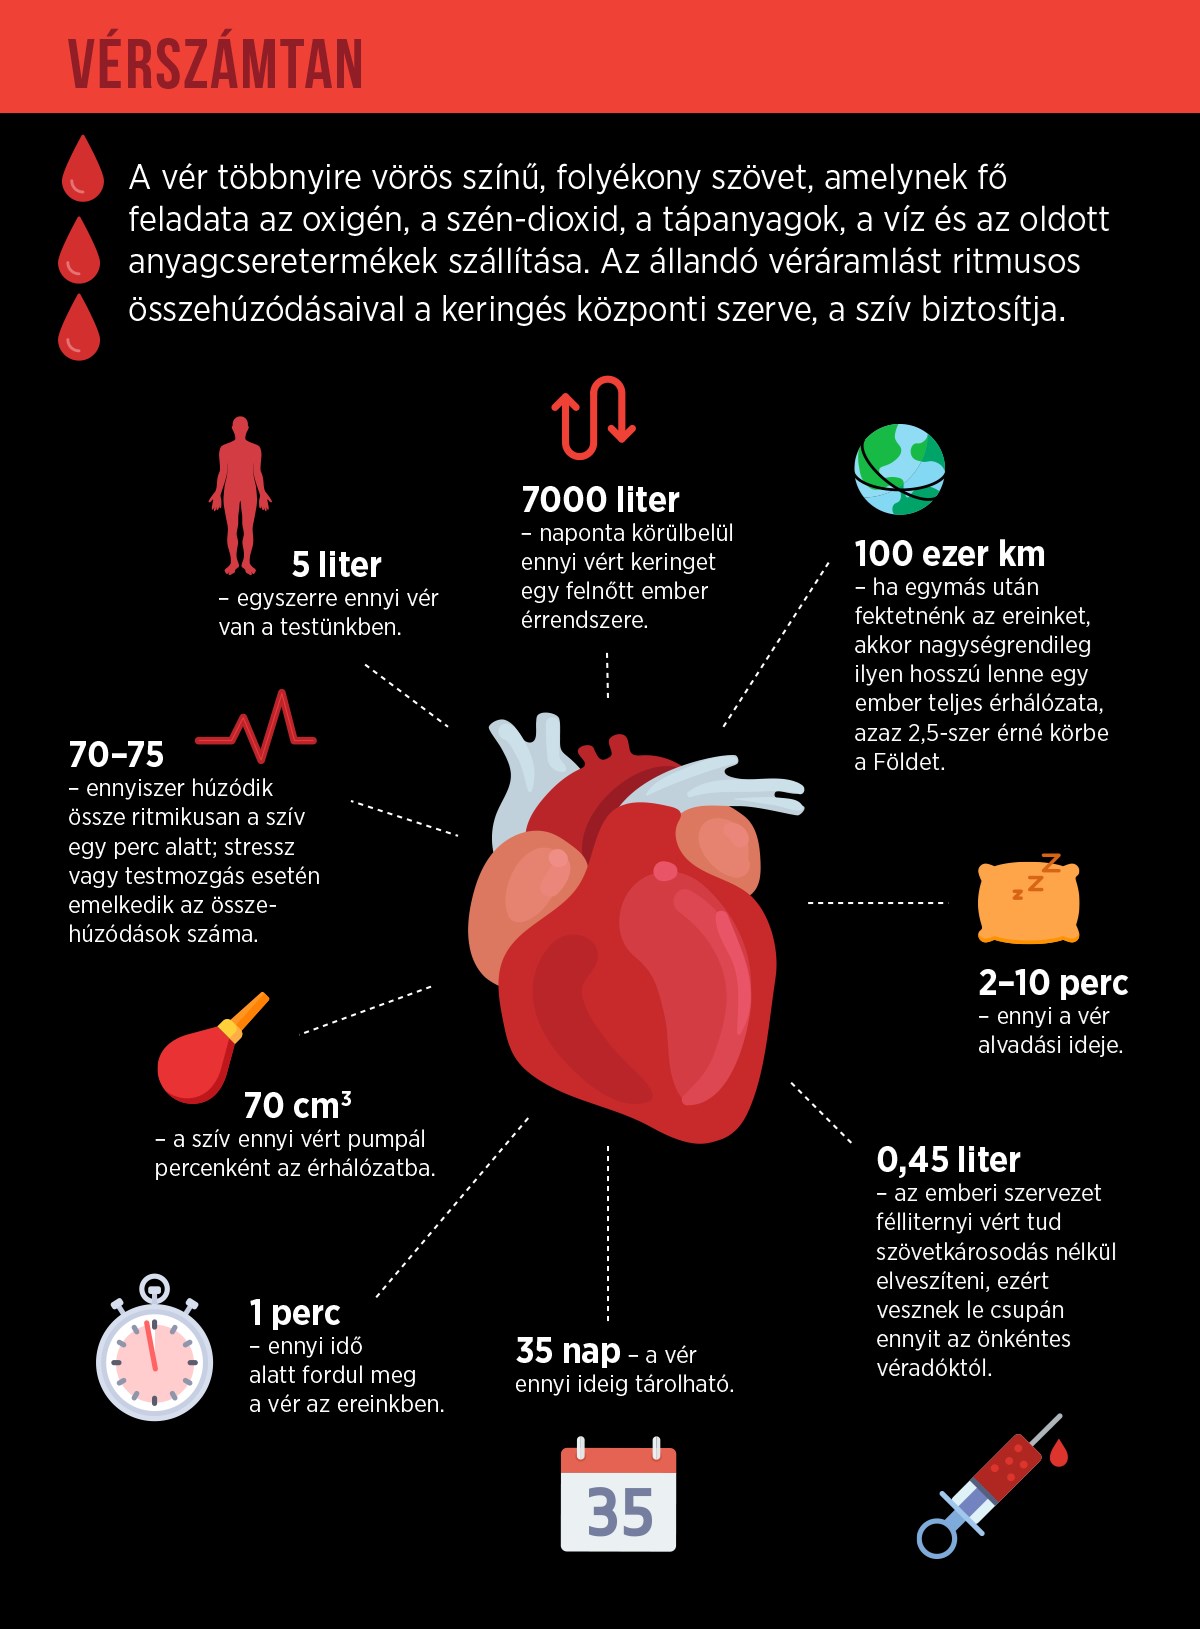 stressz teszt a szív egészségére proteinuria hipertóniával